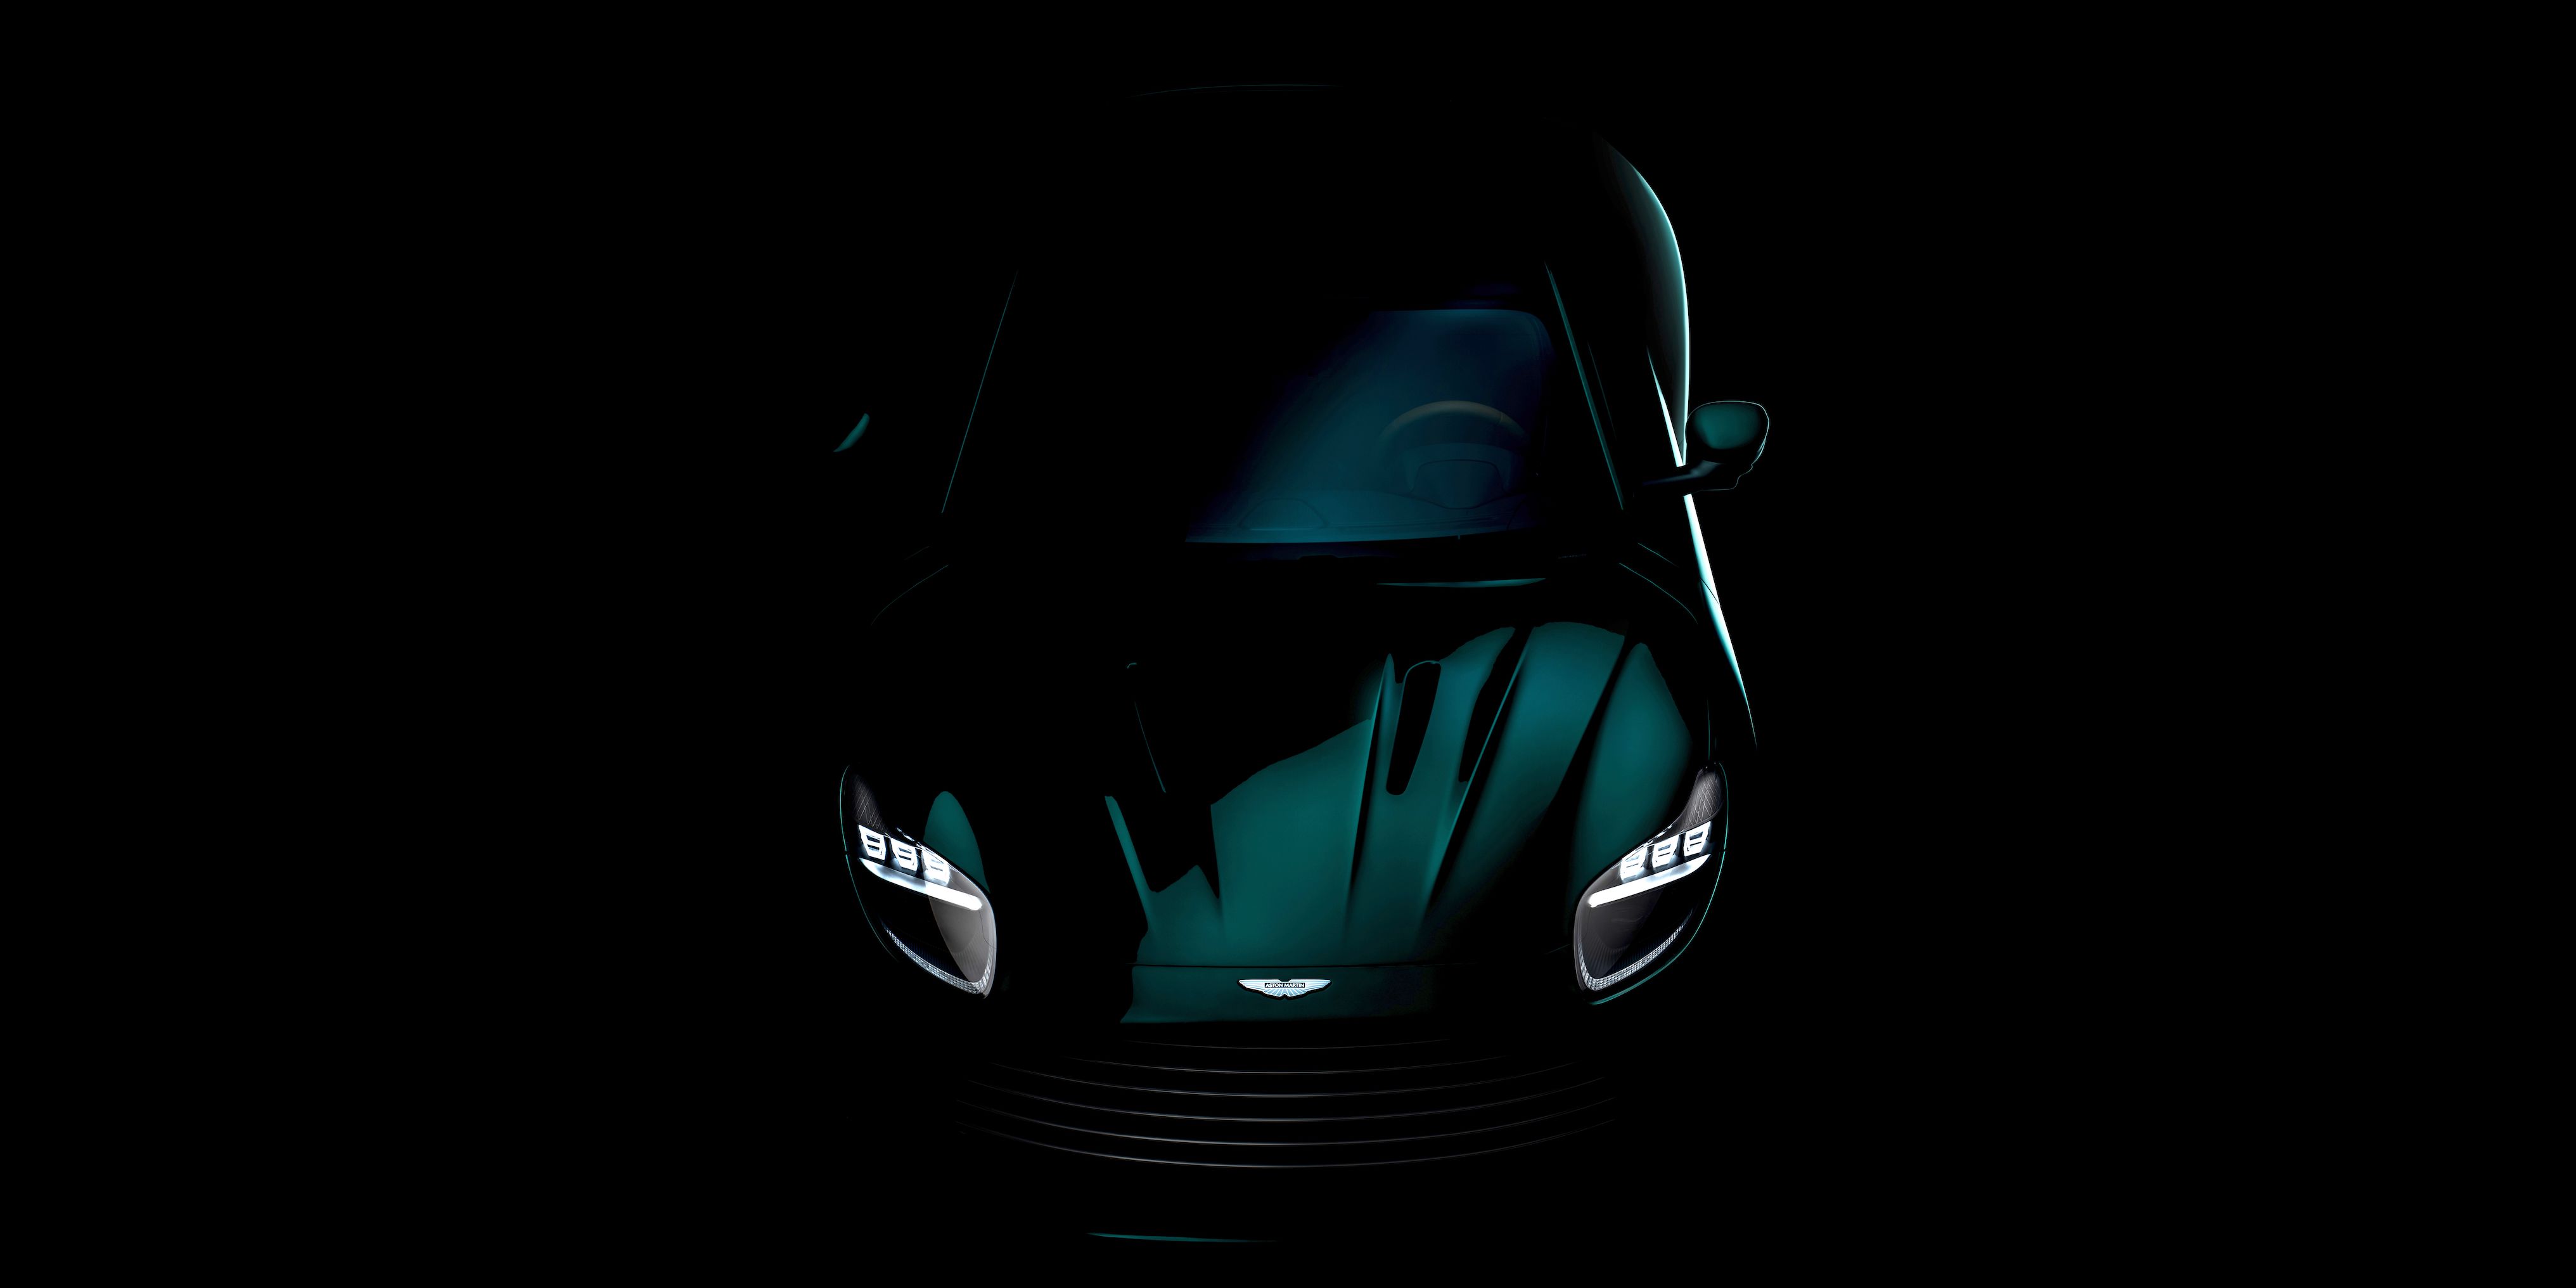 Aston Martin DB11-Successor Gets a Much-Needed Interior Update